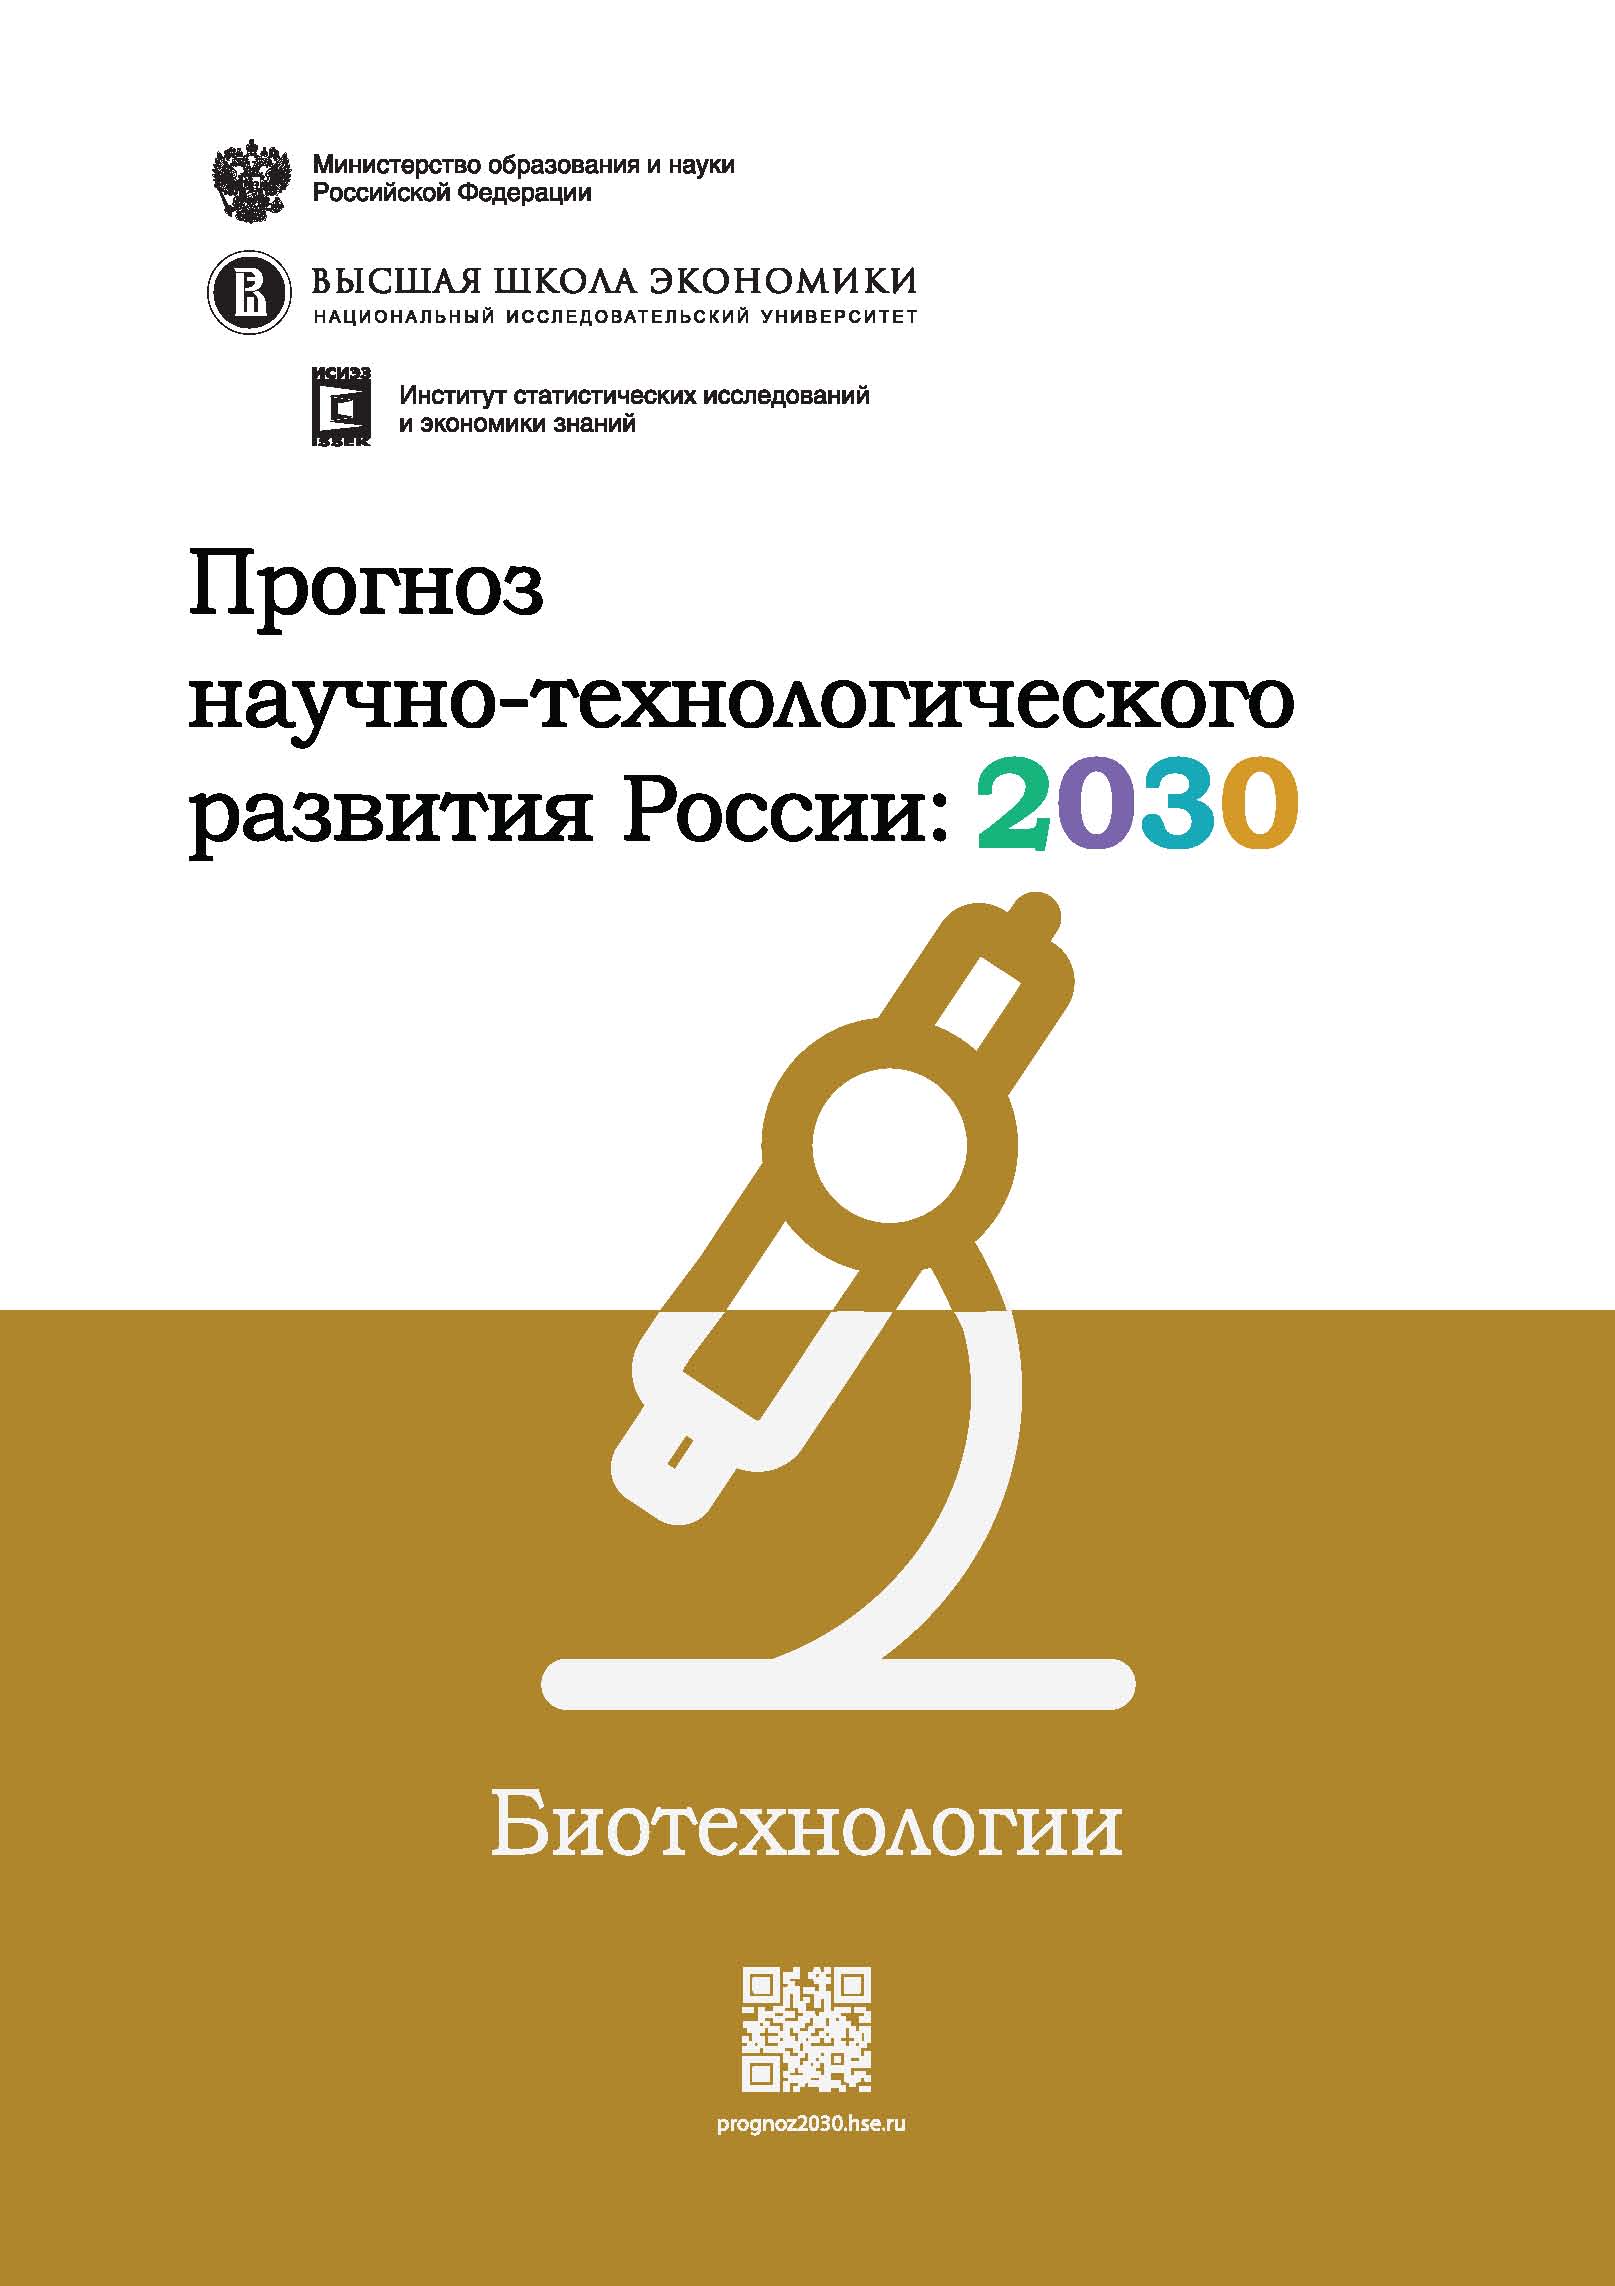 Прогноз научно-технологического развития России: 2030. Биотехнологии